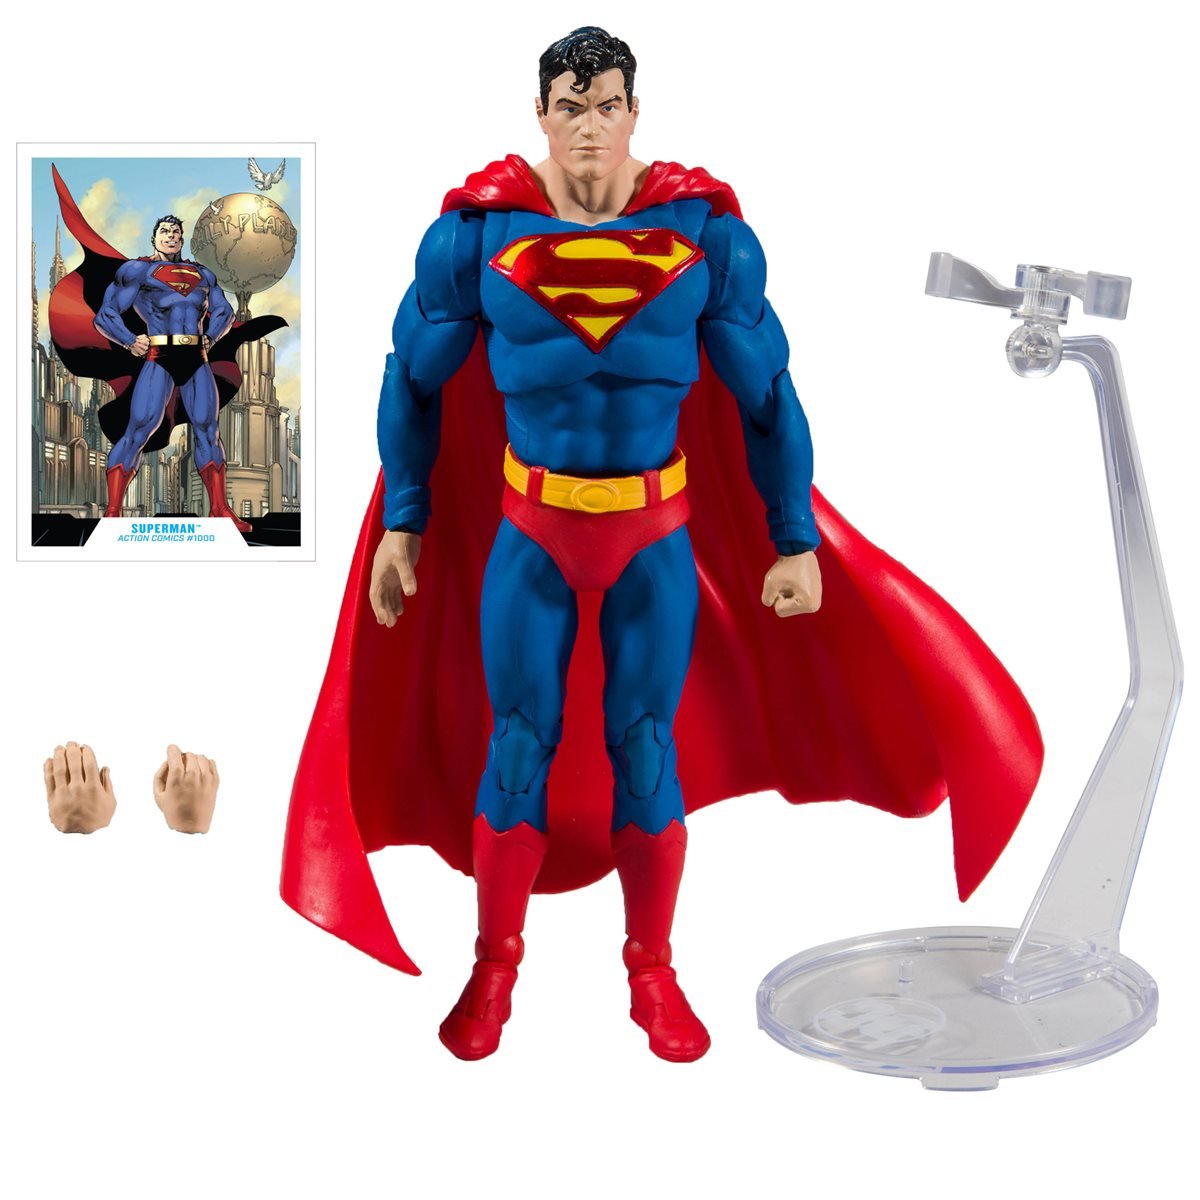 DC Direct SUPERMAN  action figure 7" 